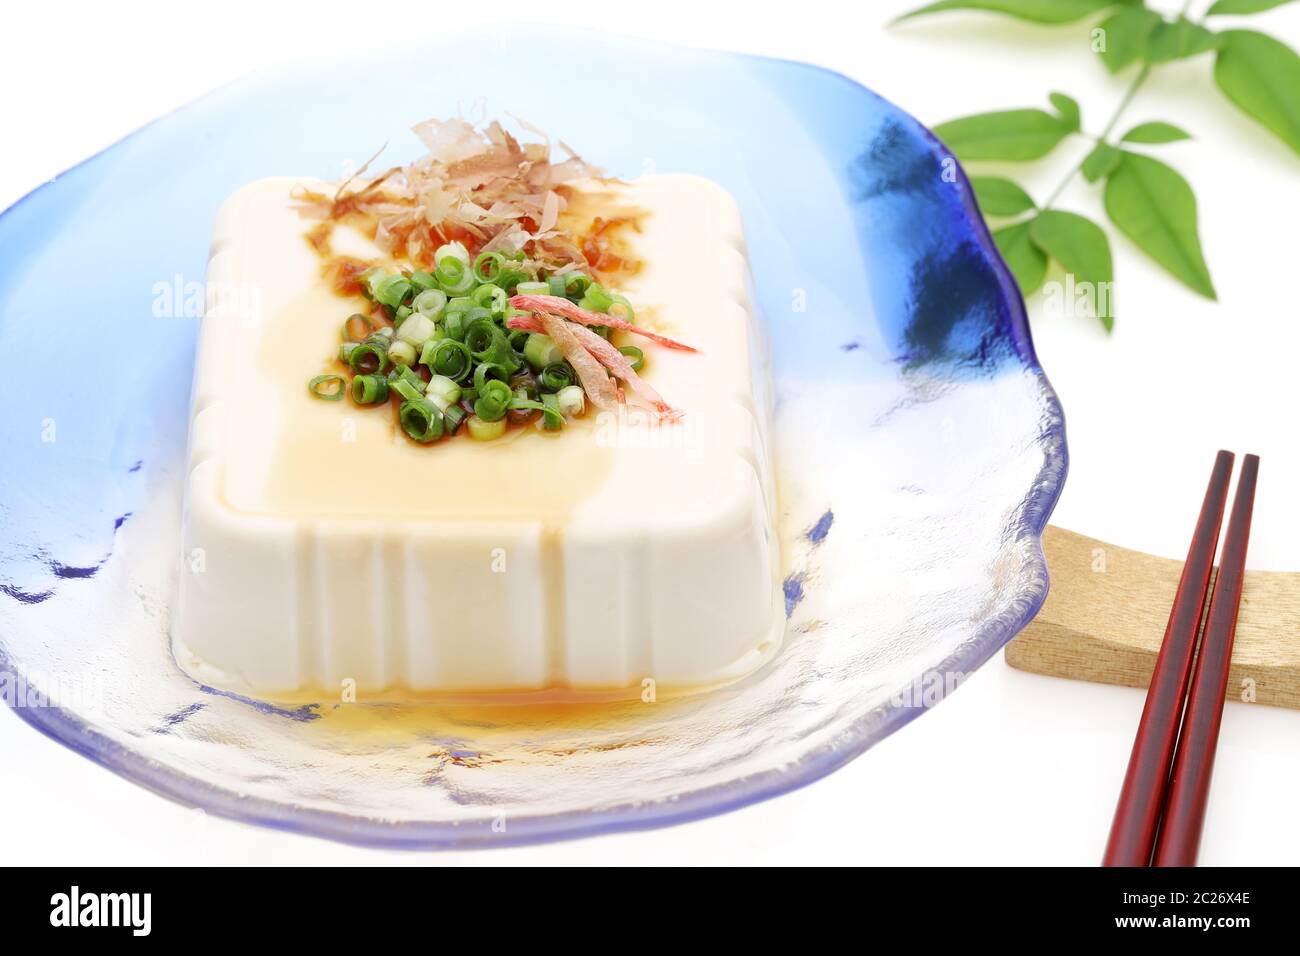 Cuisine japonaise, tofu froid mou japonais dans une plaque de verre sur fond blanc Banque D'Images